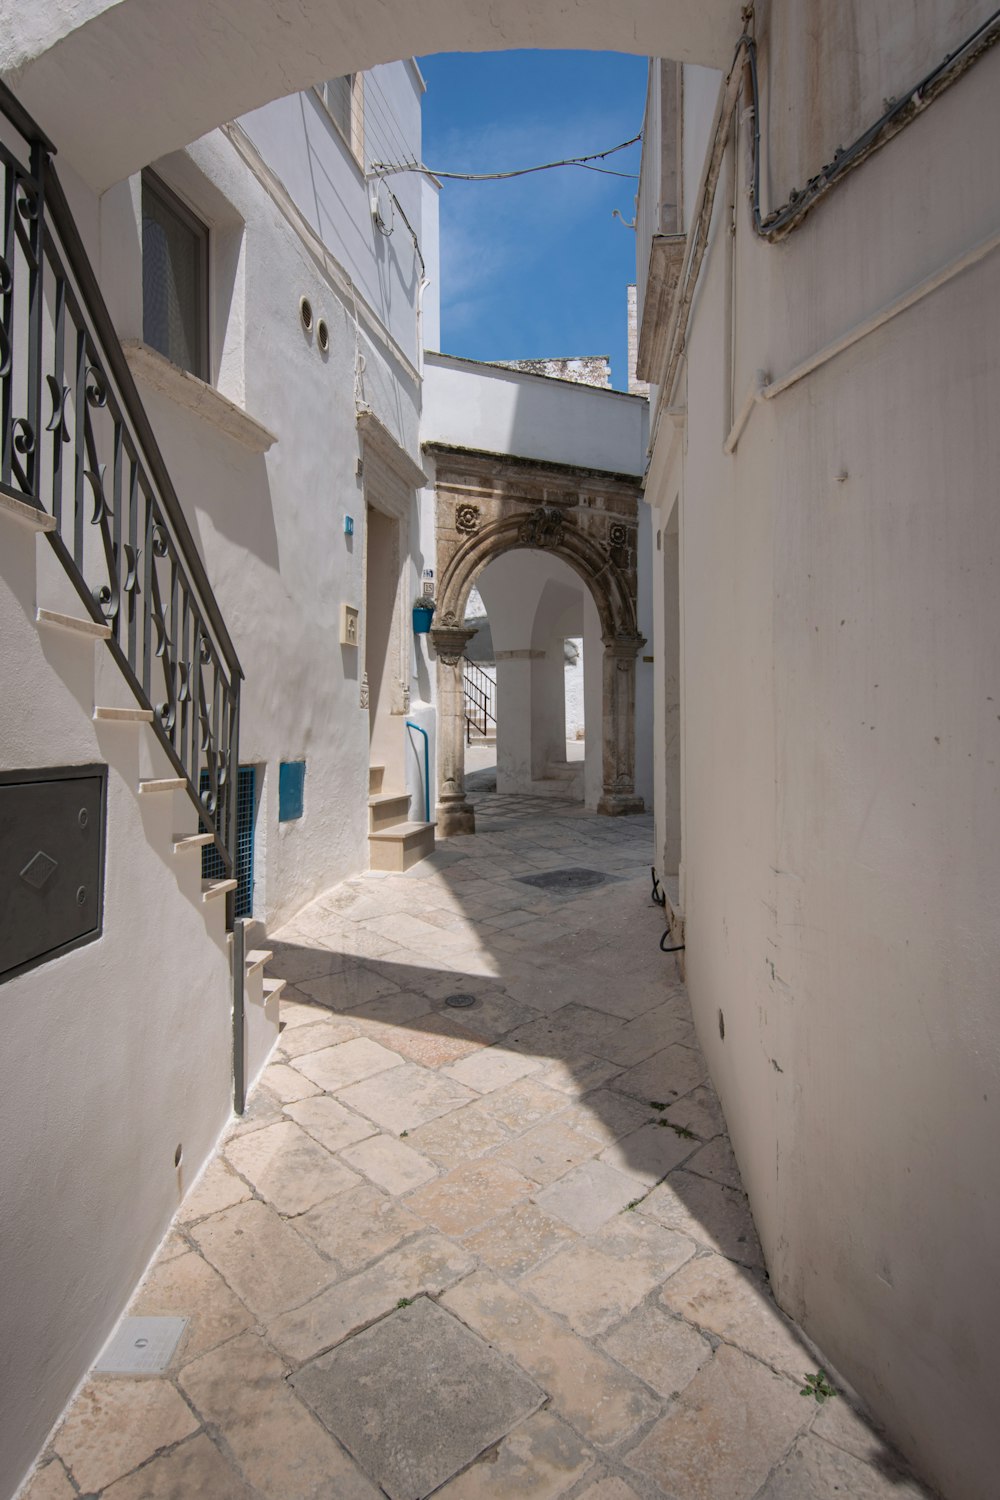 a stone walkway between two buildings